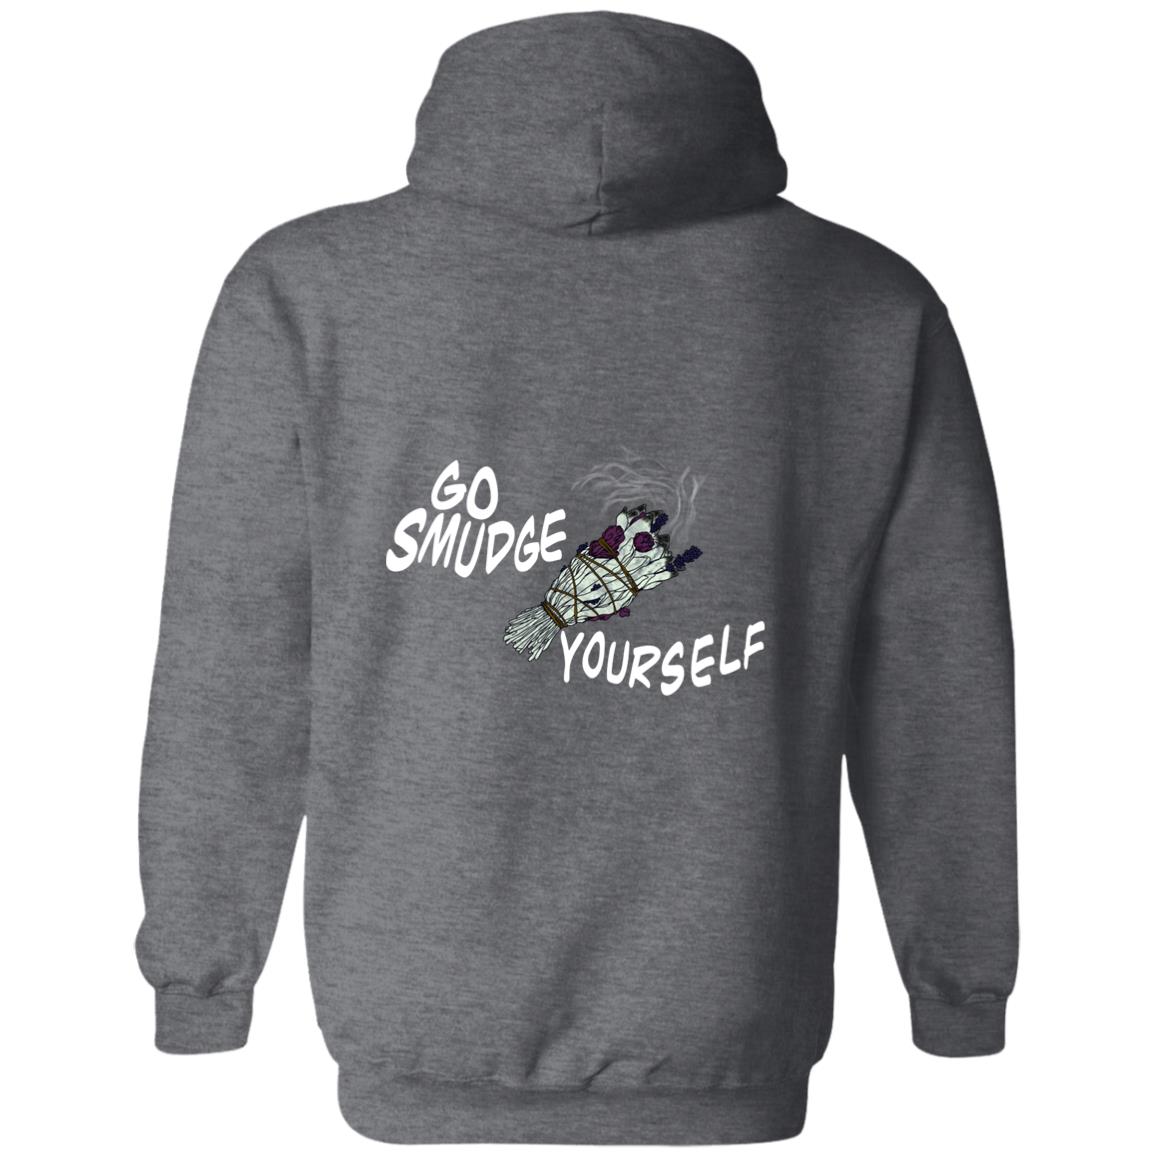 Go Smudge Yourself Sweatshirt